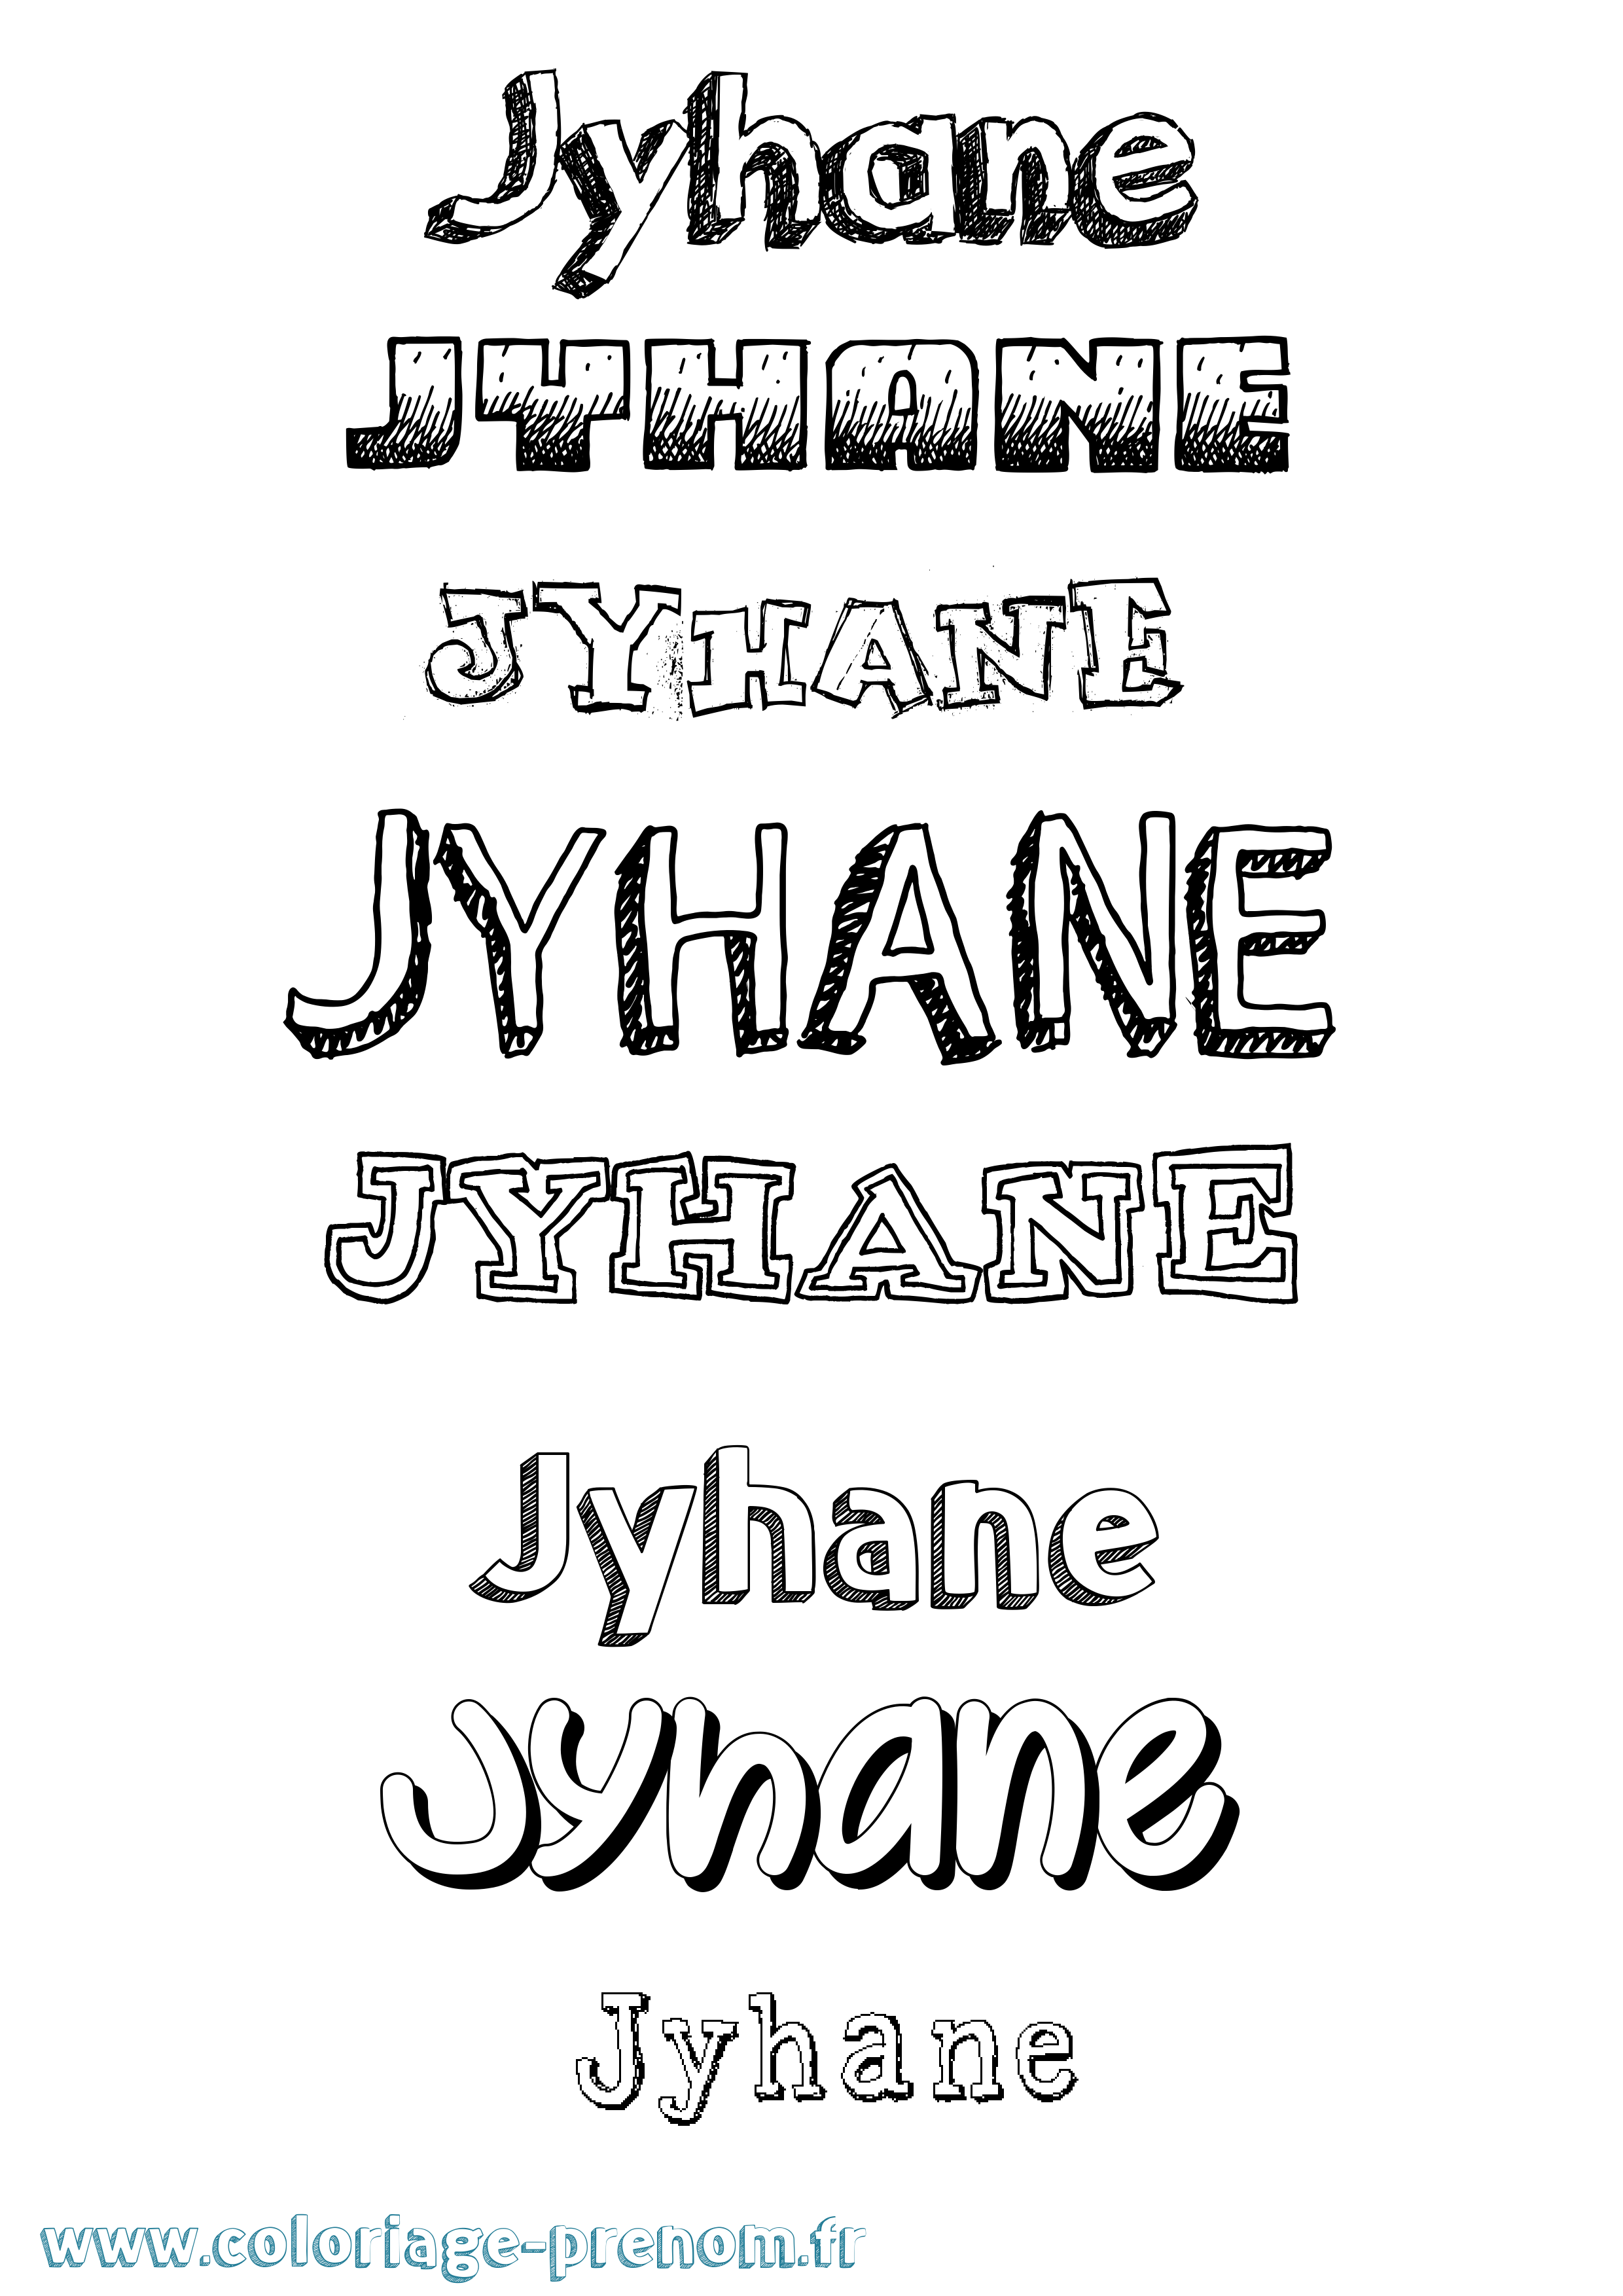 Coloriage prénom Jyhane Dessiné